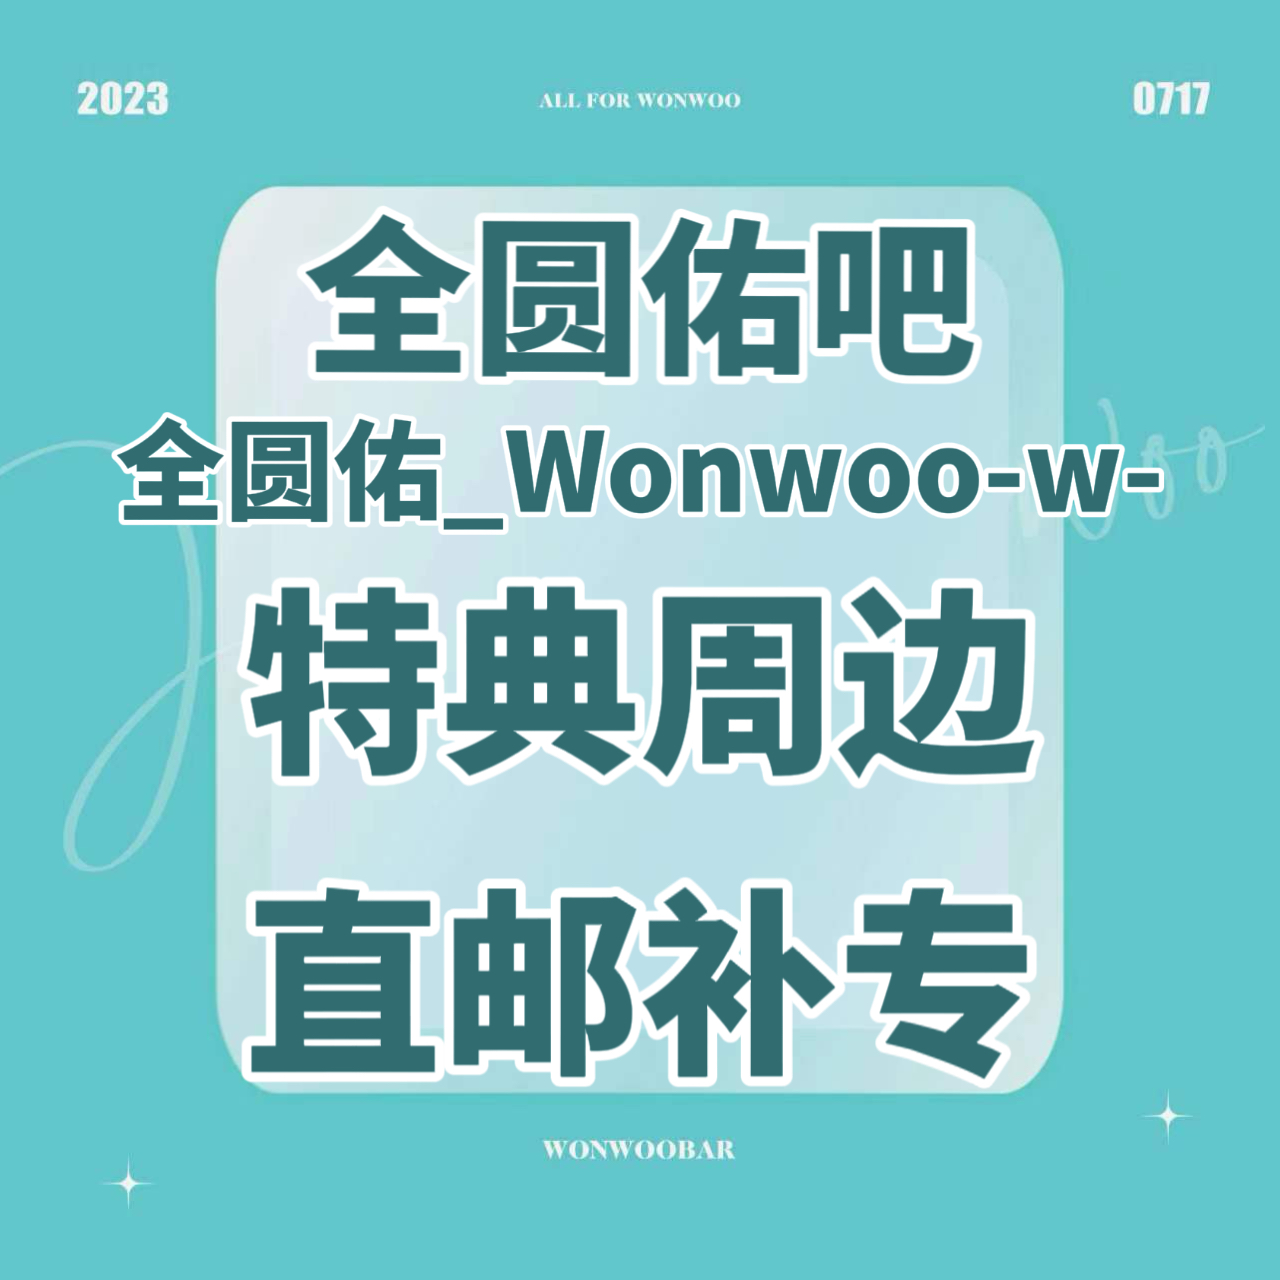 [补专 圆吧特典专] [Ktown4u Special Gift] *备注微店绑定手机号 SEVENTEEN - 迷你10辑 [FML] (随机版本)_全圆佑吧_WonwooBar